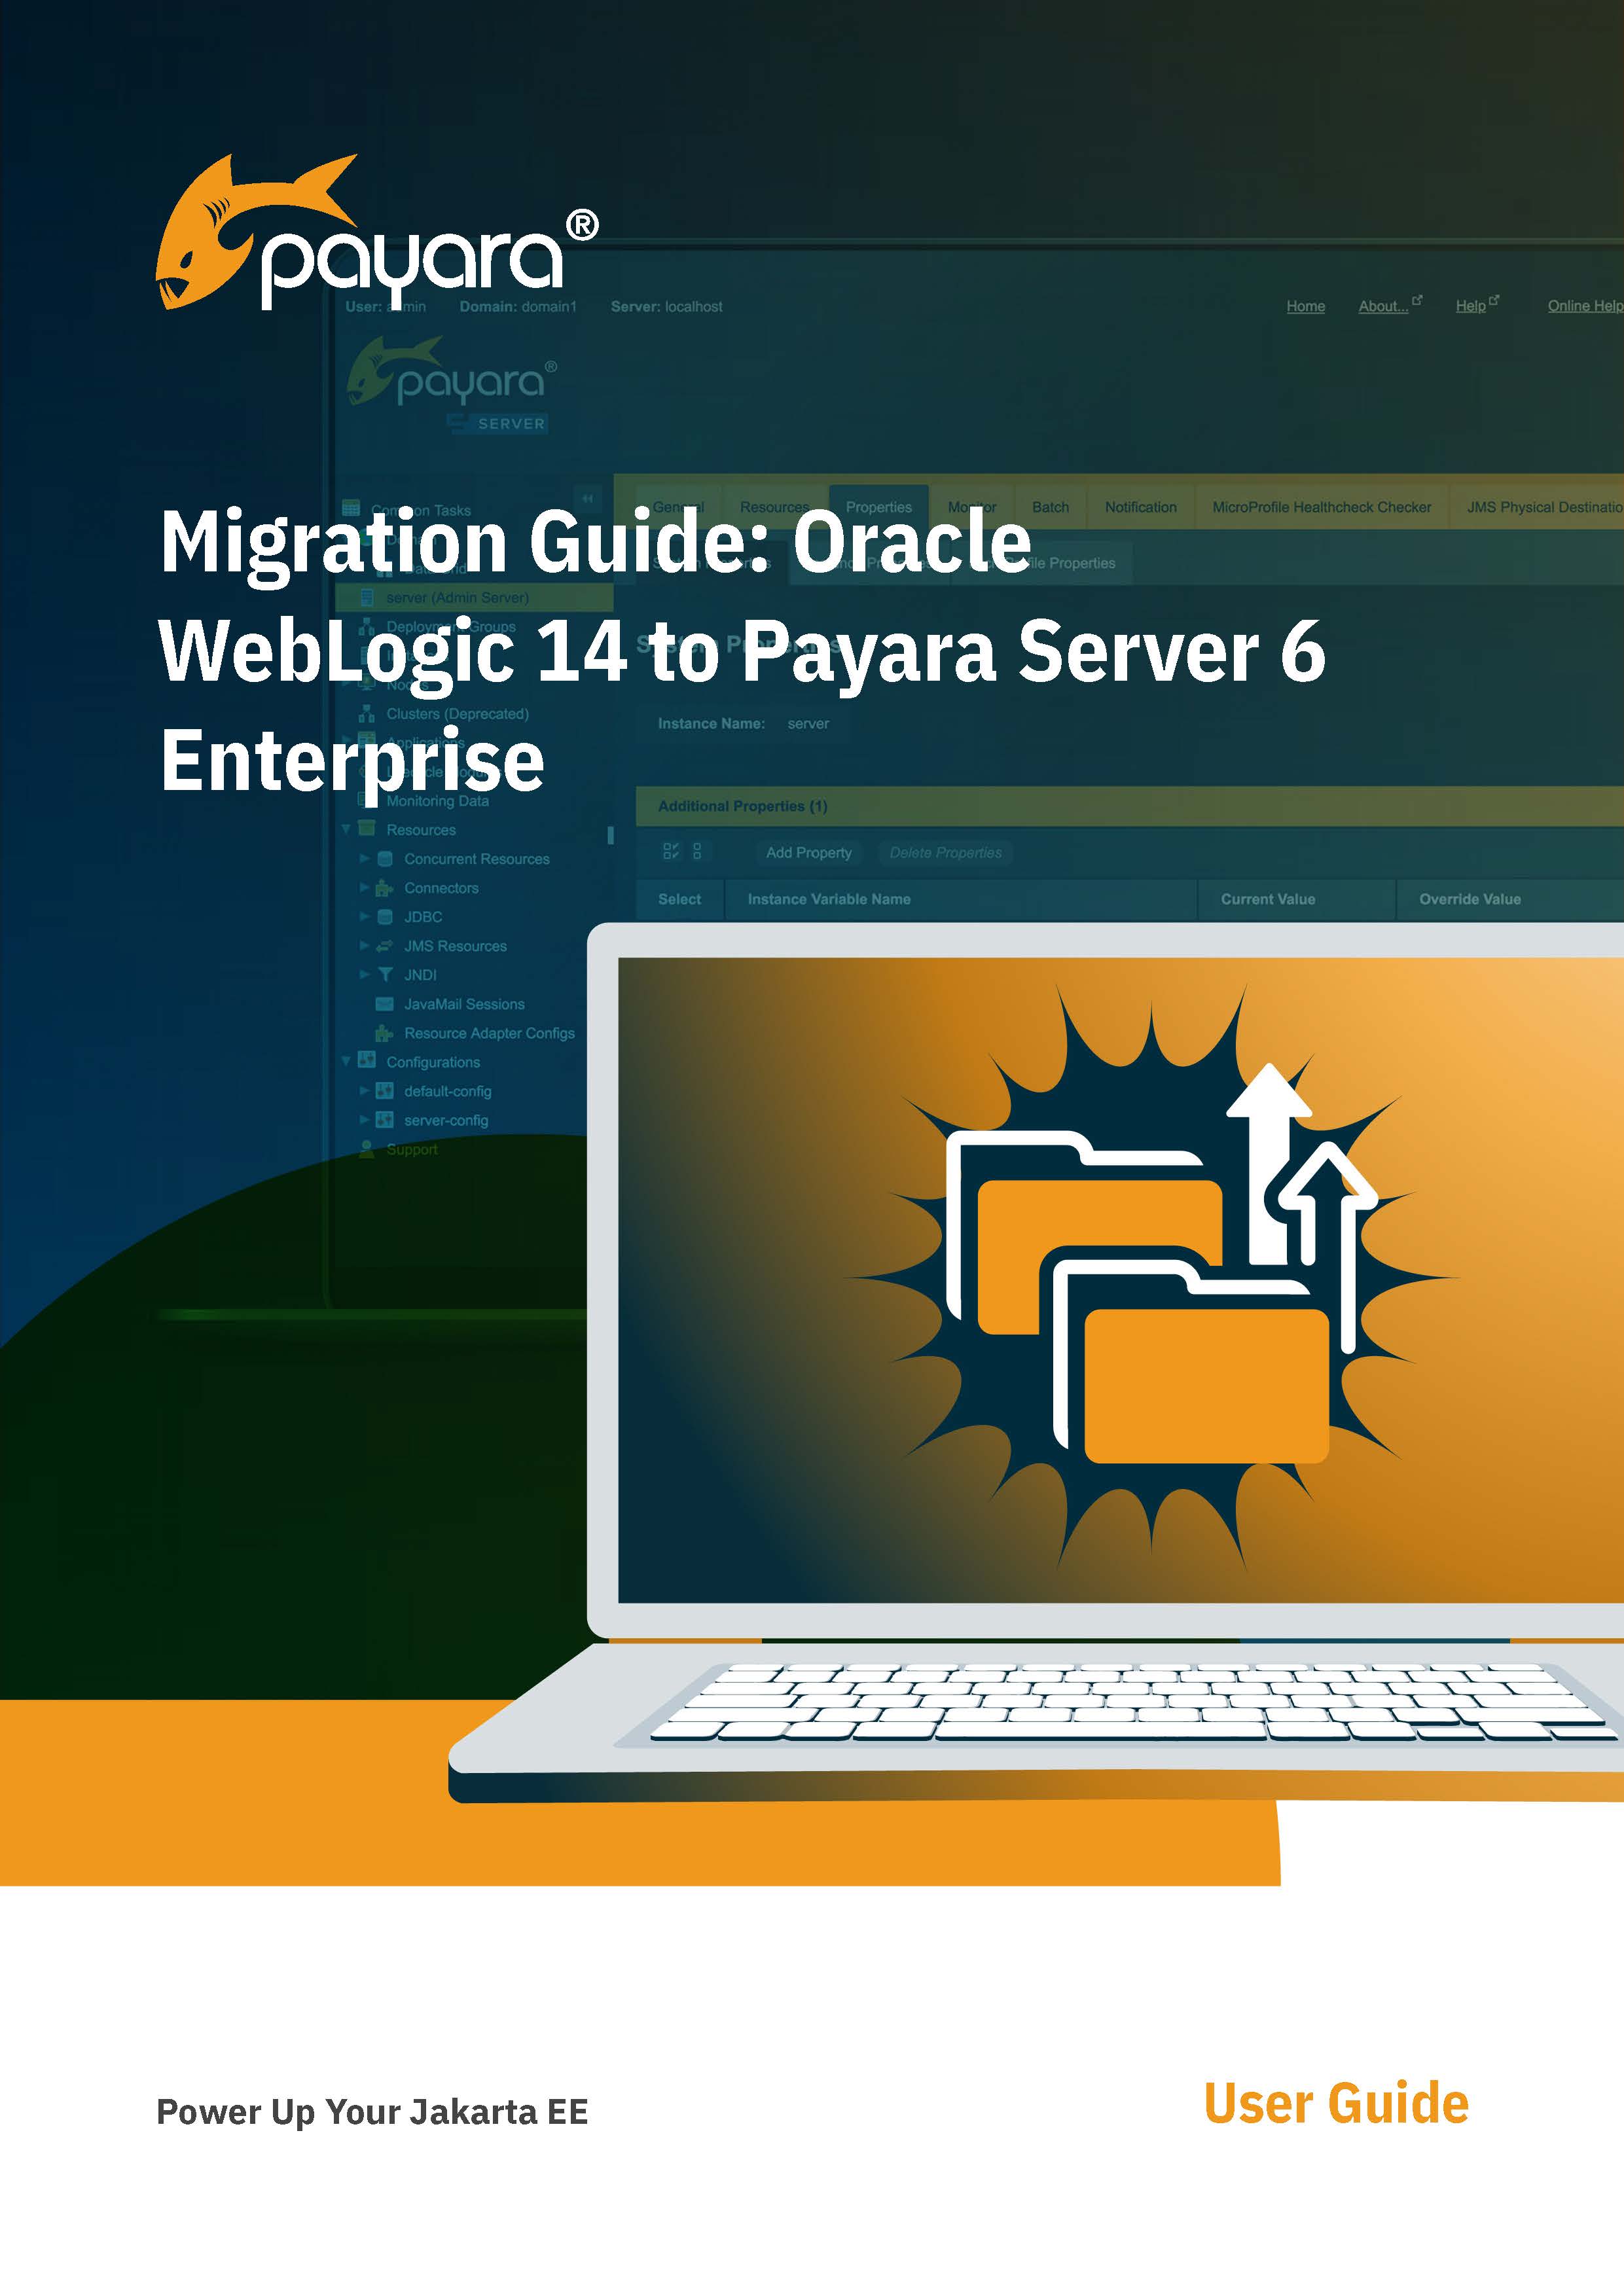 Migration Guide: Oracle WebLogic 14 to Payara Server 6 Enterprise